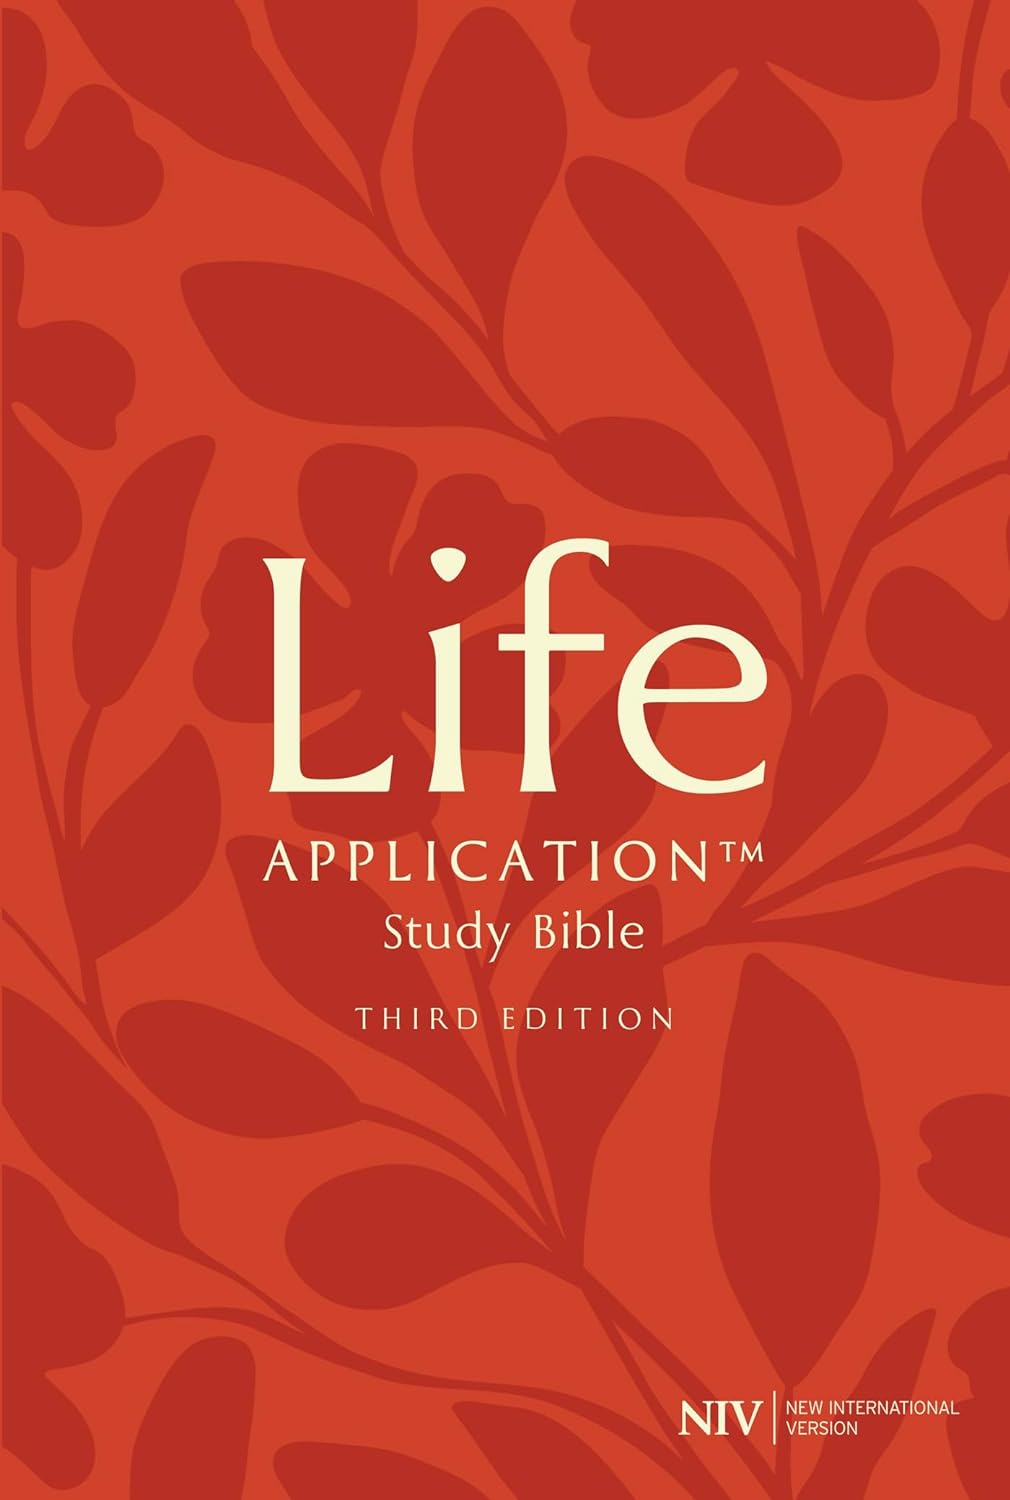 Bible NIV Life Application Study Edition